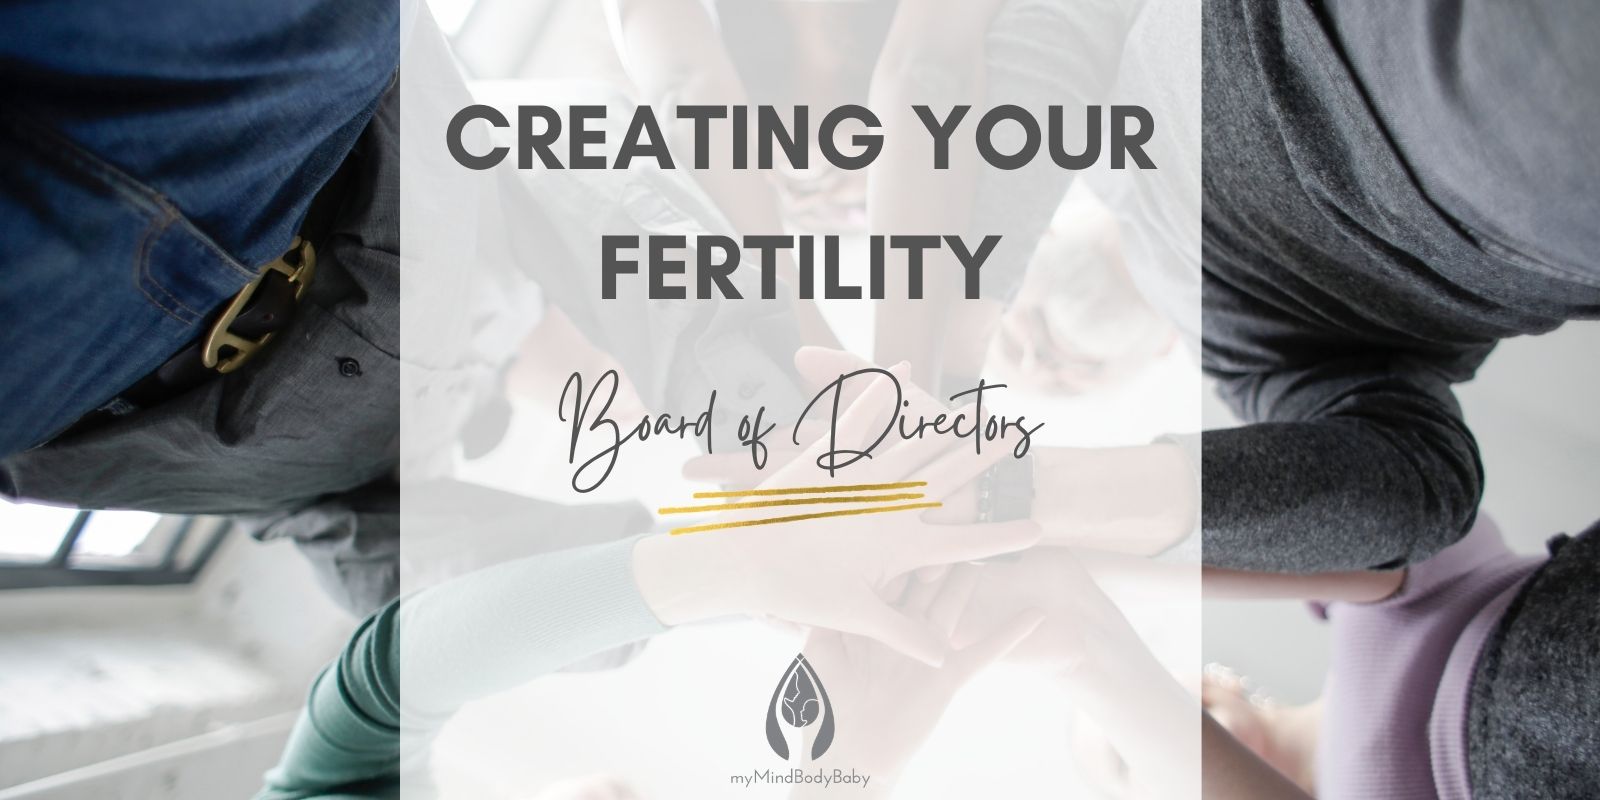 Fertility "Board of Directors"